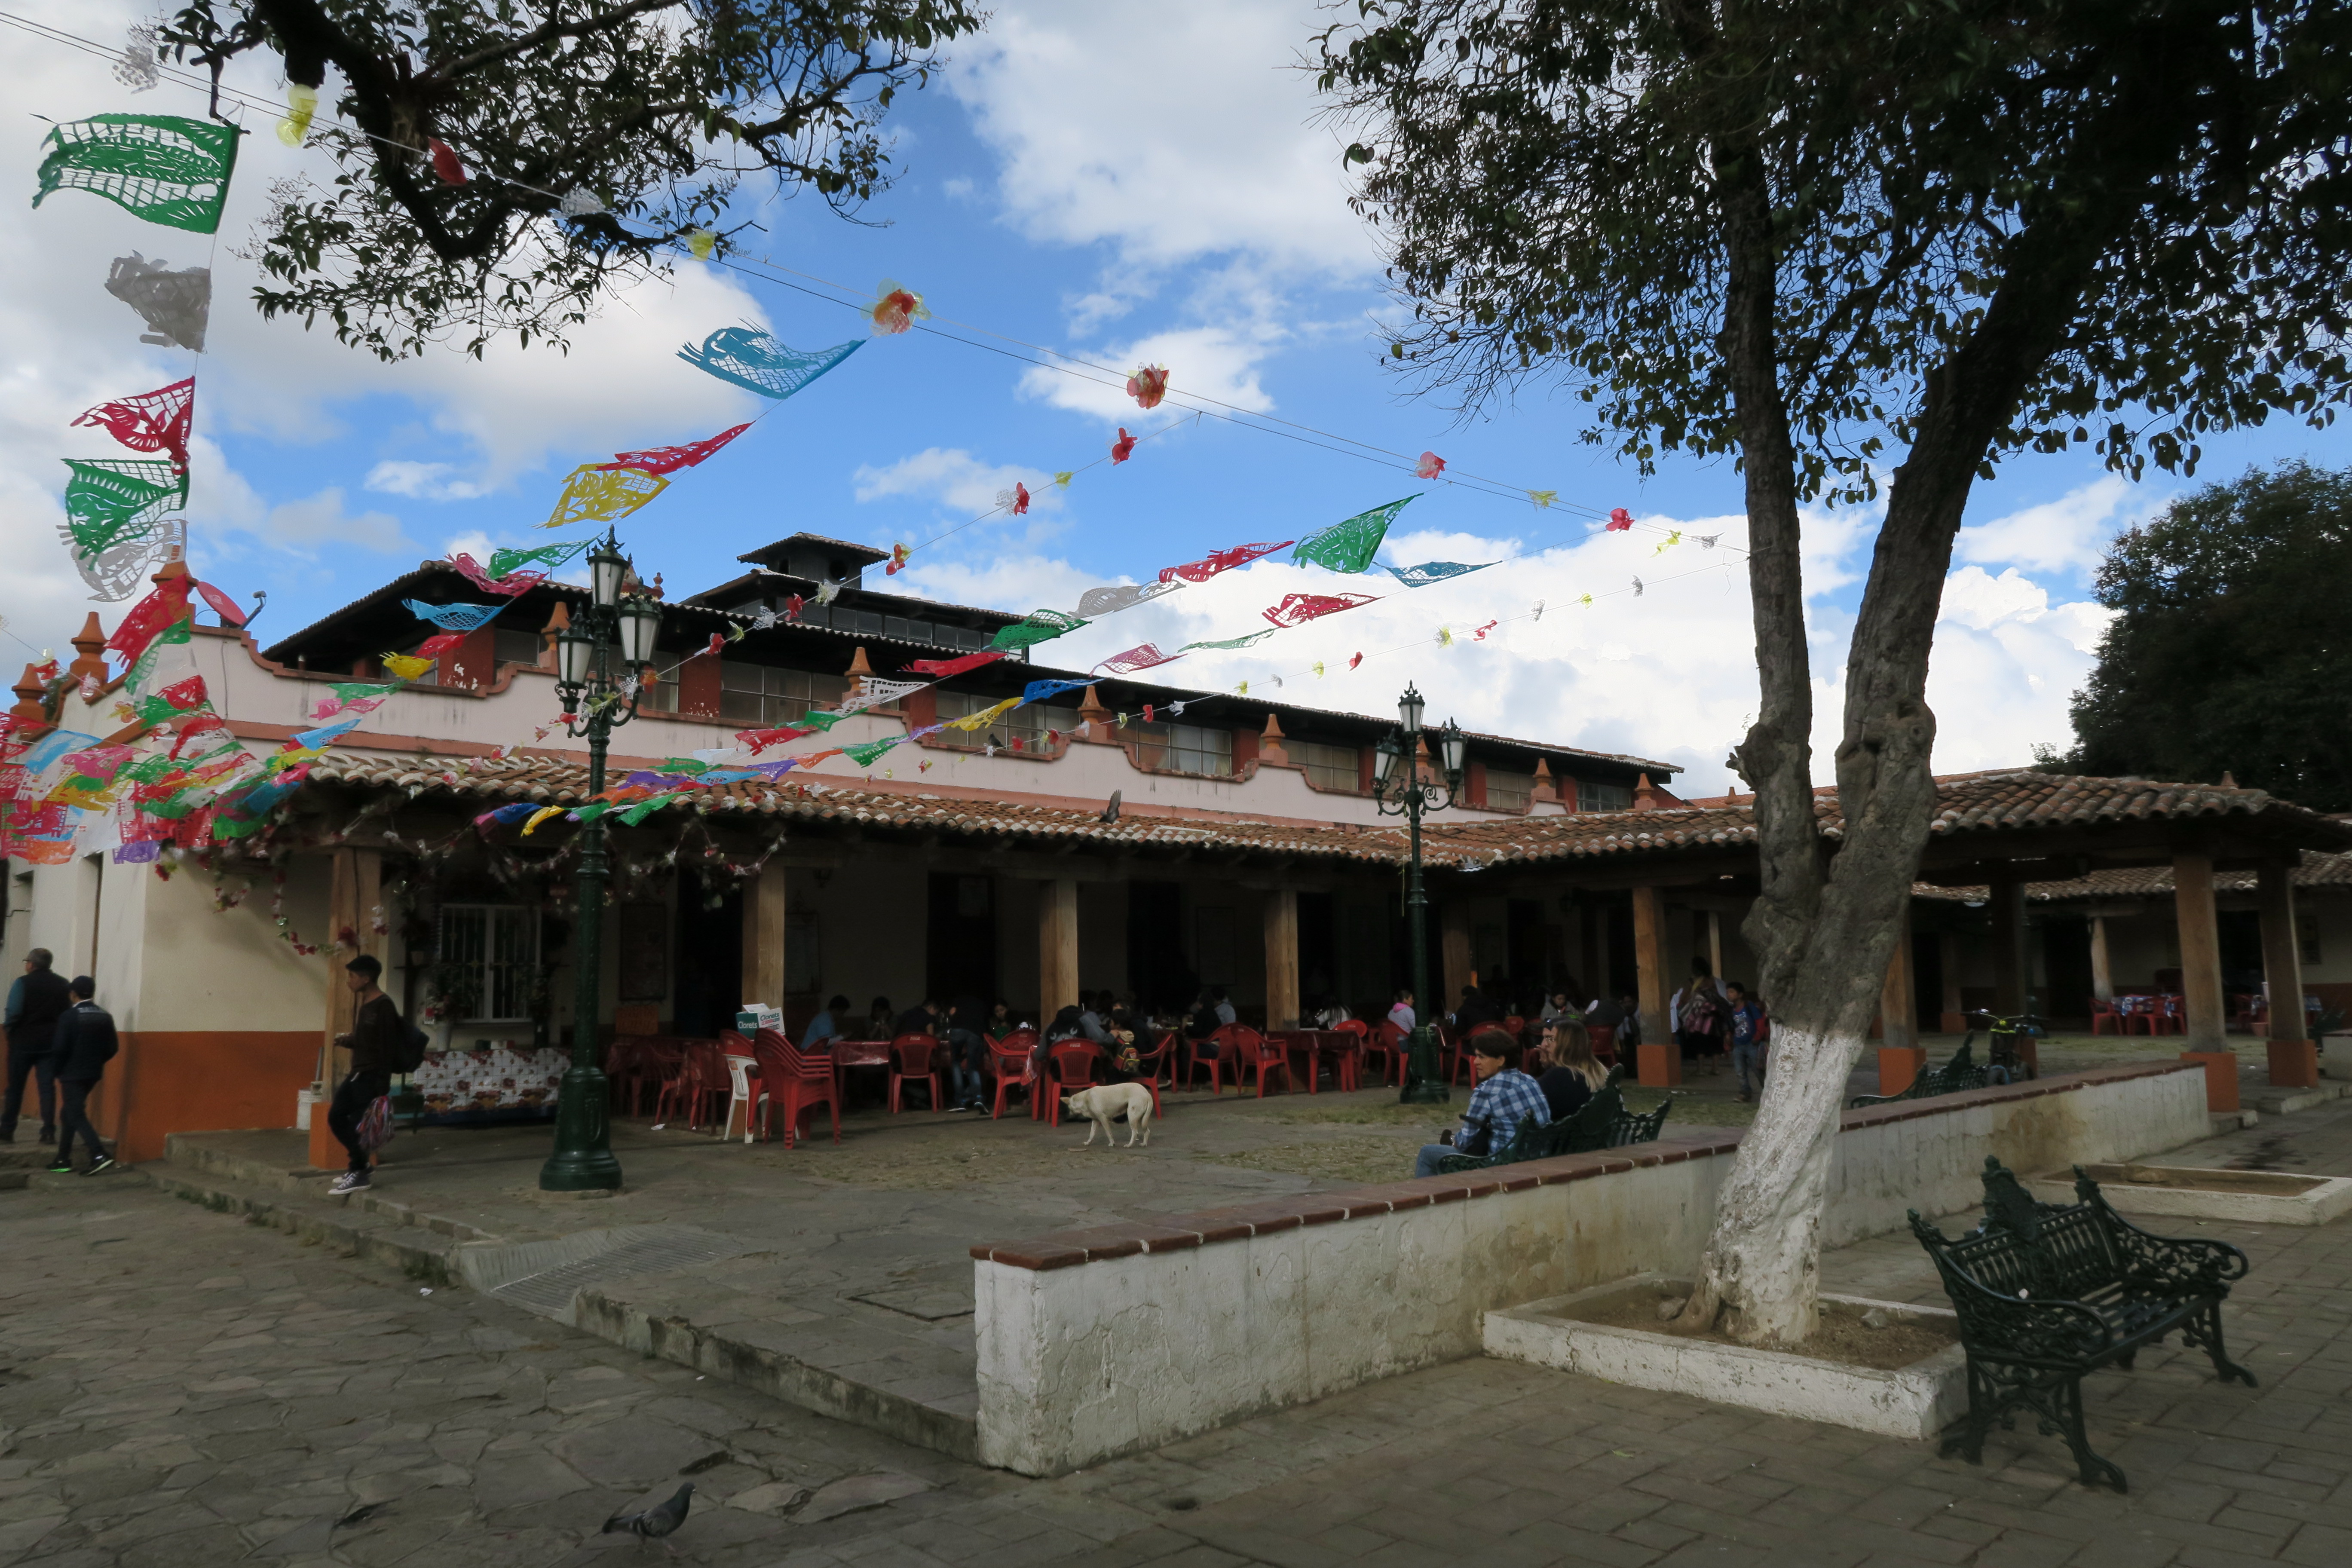 Place avec plusieurs restaurants en terrasses, couverte de guirlandes aux couleurs du Mexique.